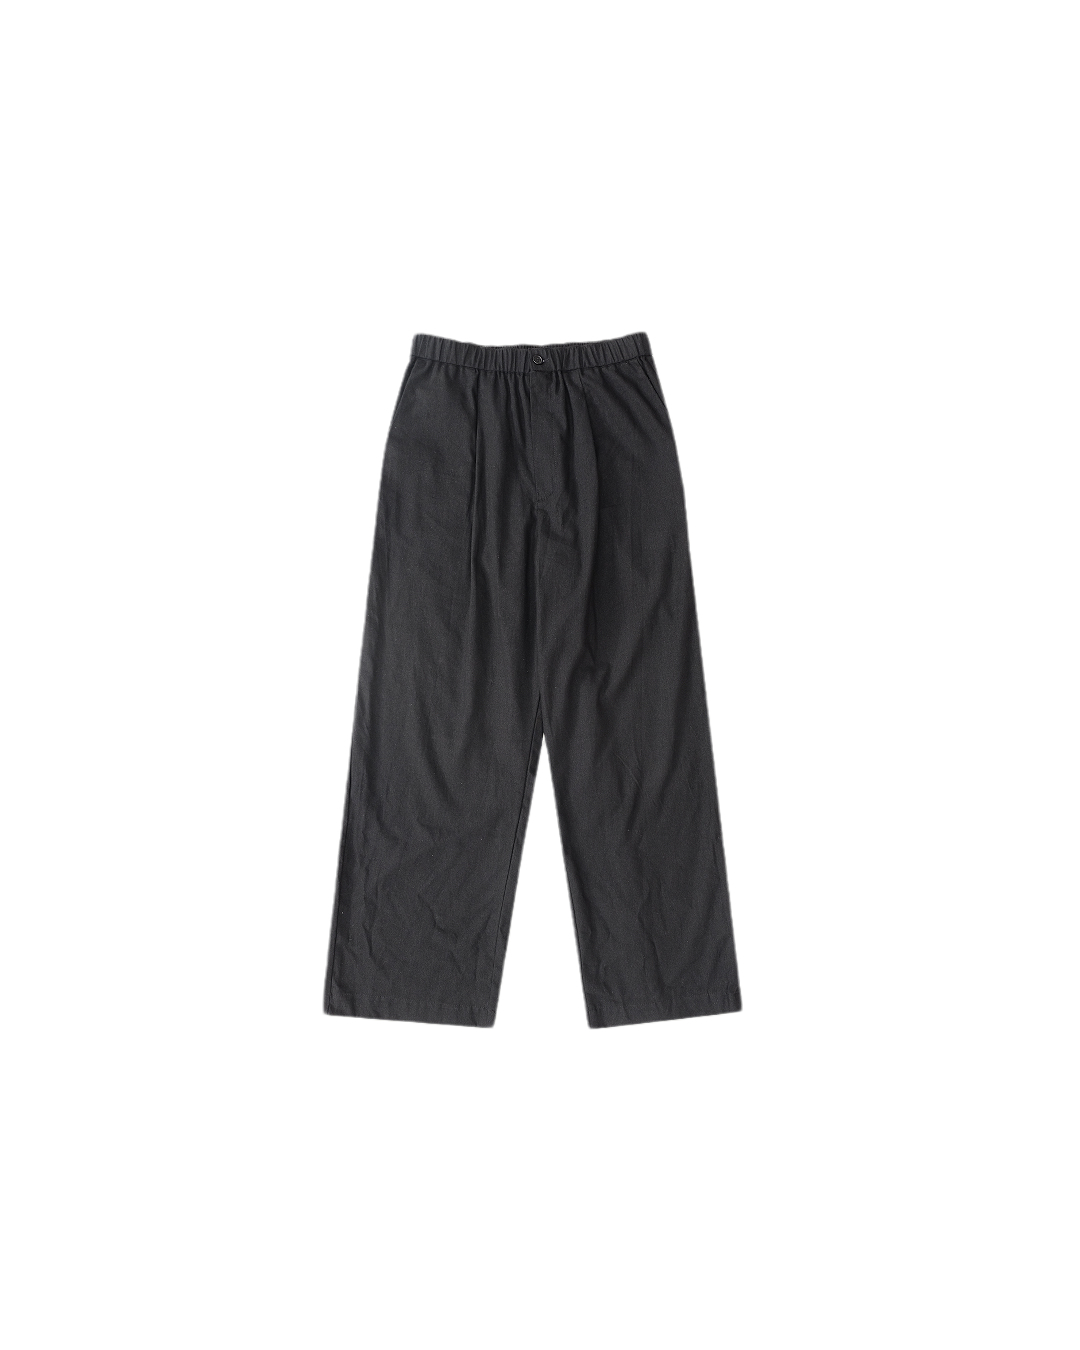 Summer Linen Relaxed Pants (Black)